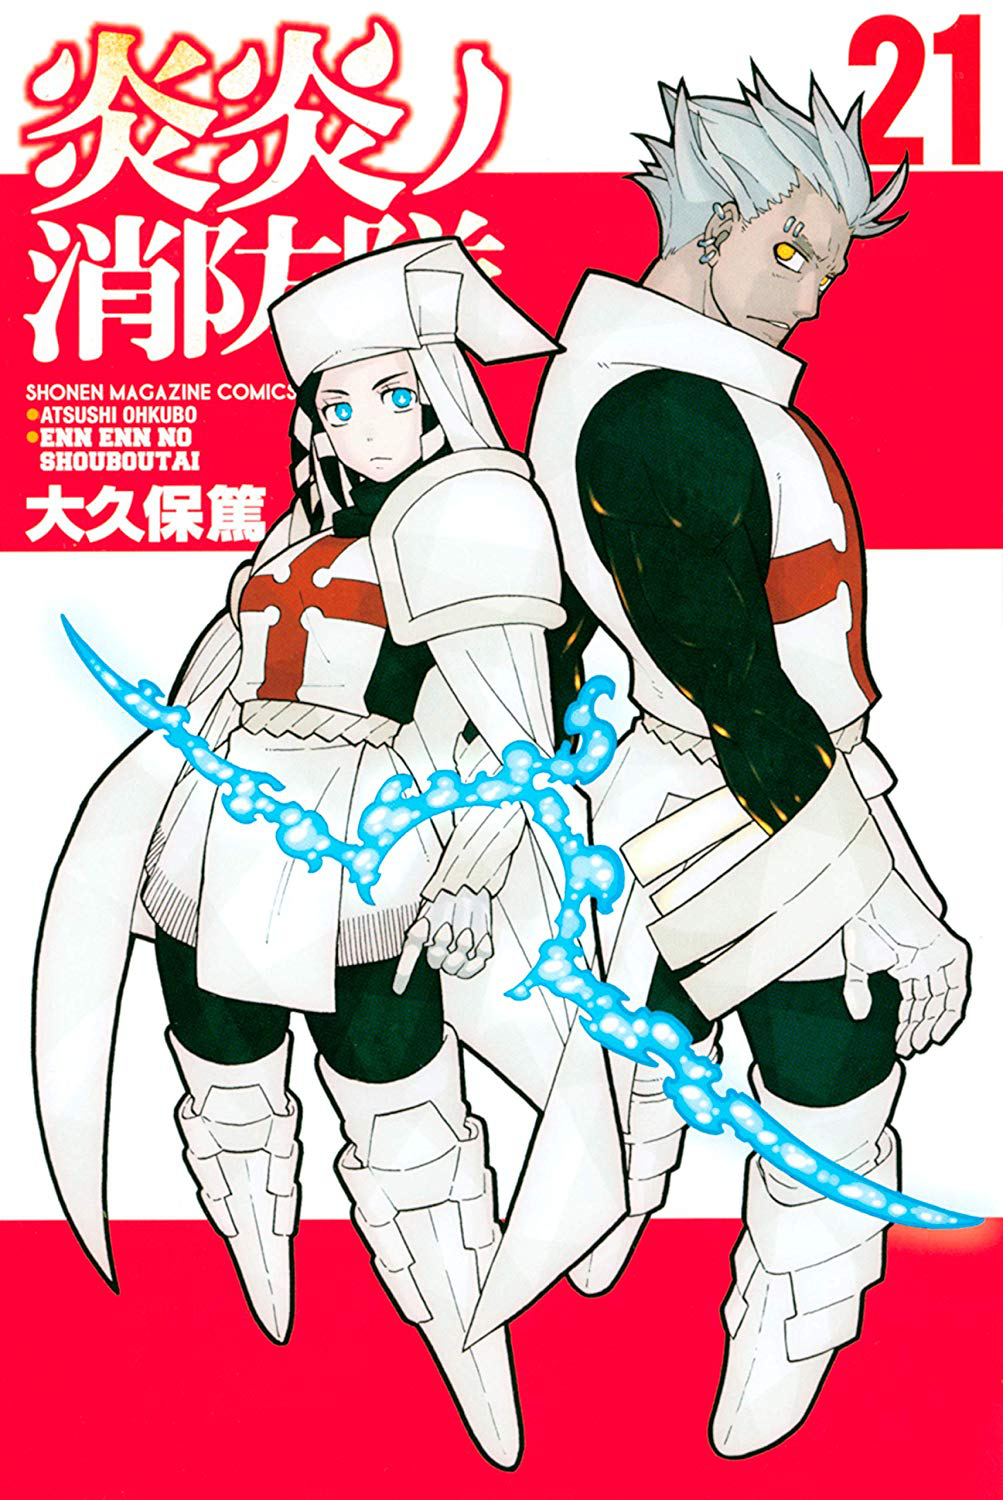 Fire Force Volume 25 (Enen no Shouboutai) - Manga Store 